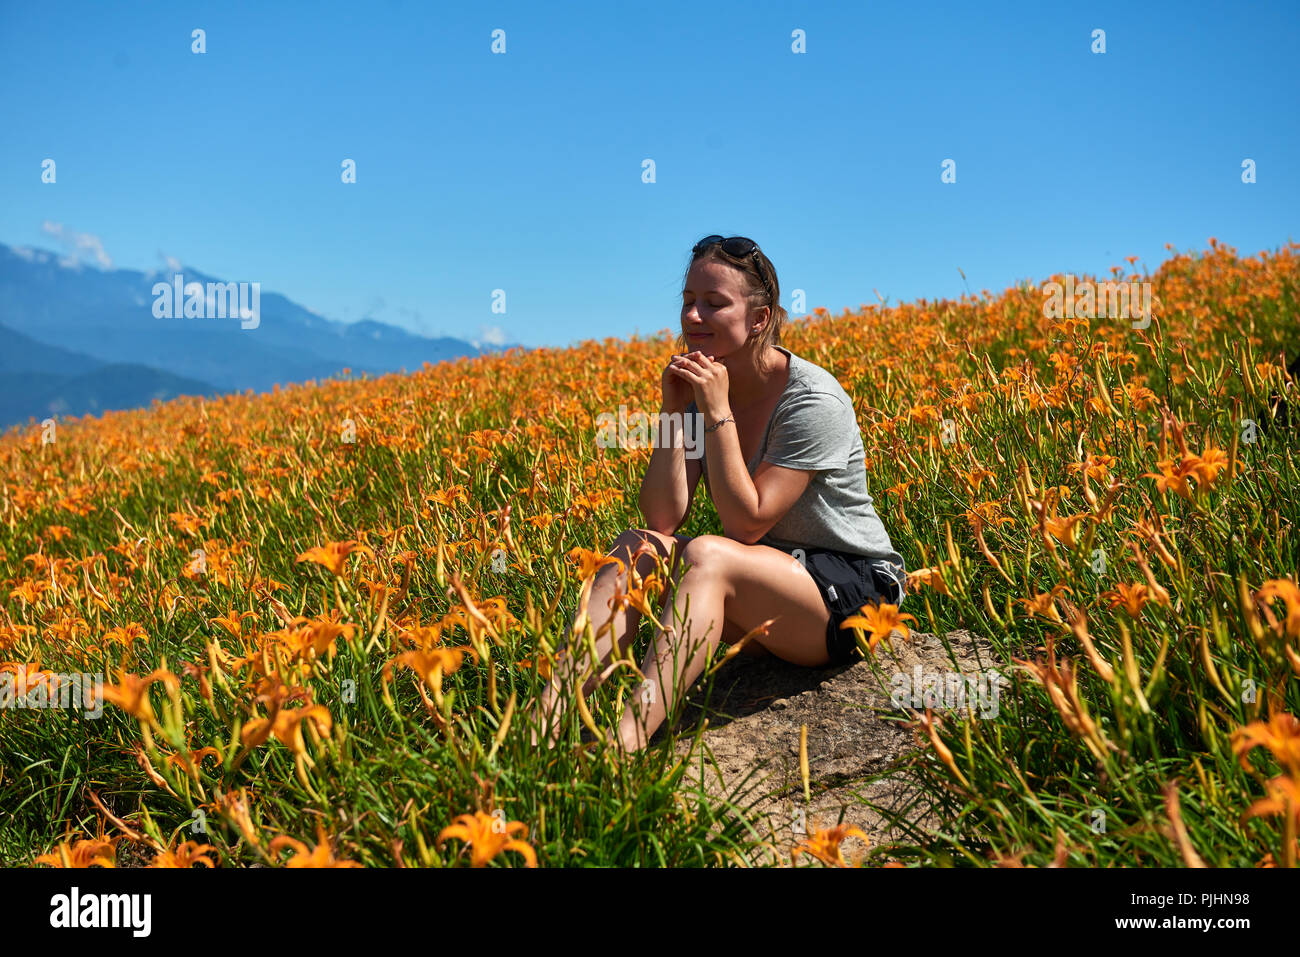 Giovane ragazza seduta nei campi di gigli arancione con le montagne sullo sfondo Foto Stock